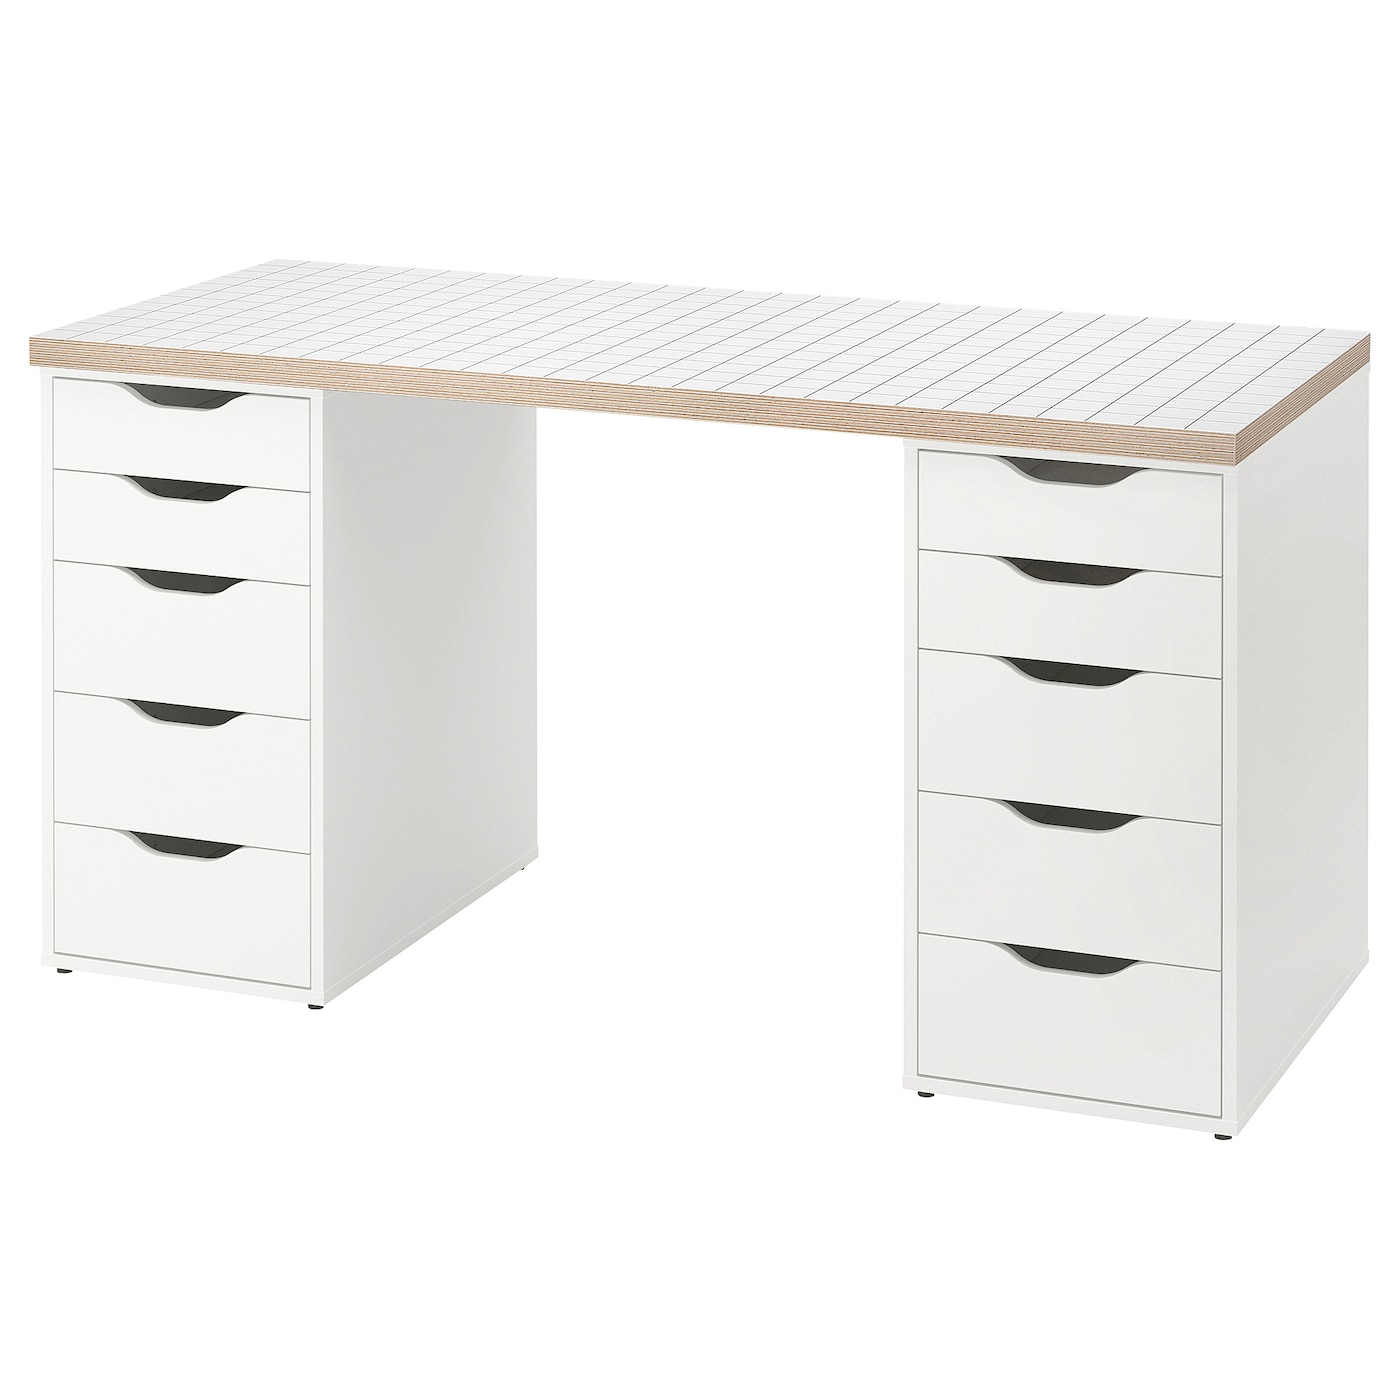 Письменный стол с ящиками - IKEA LAGKAPTEN/ALEX/ АЛЕКС/ЛАГКАПТЕН ИКЕА, 140x60 см, белый антрацит